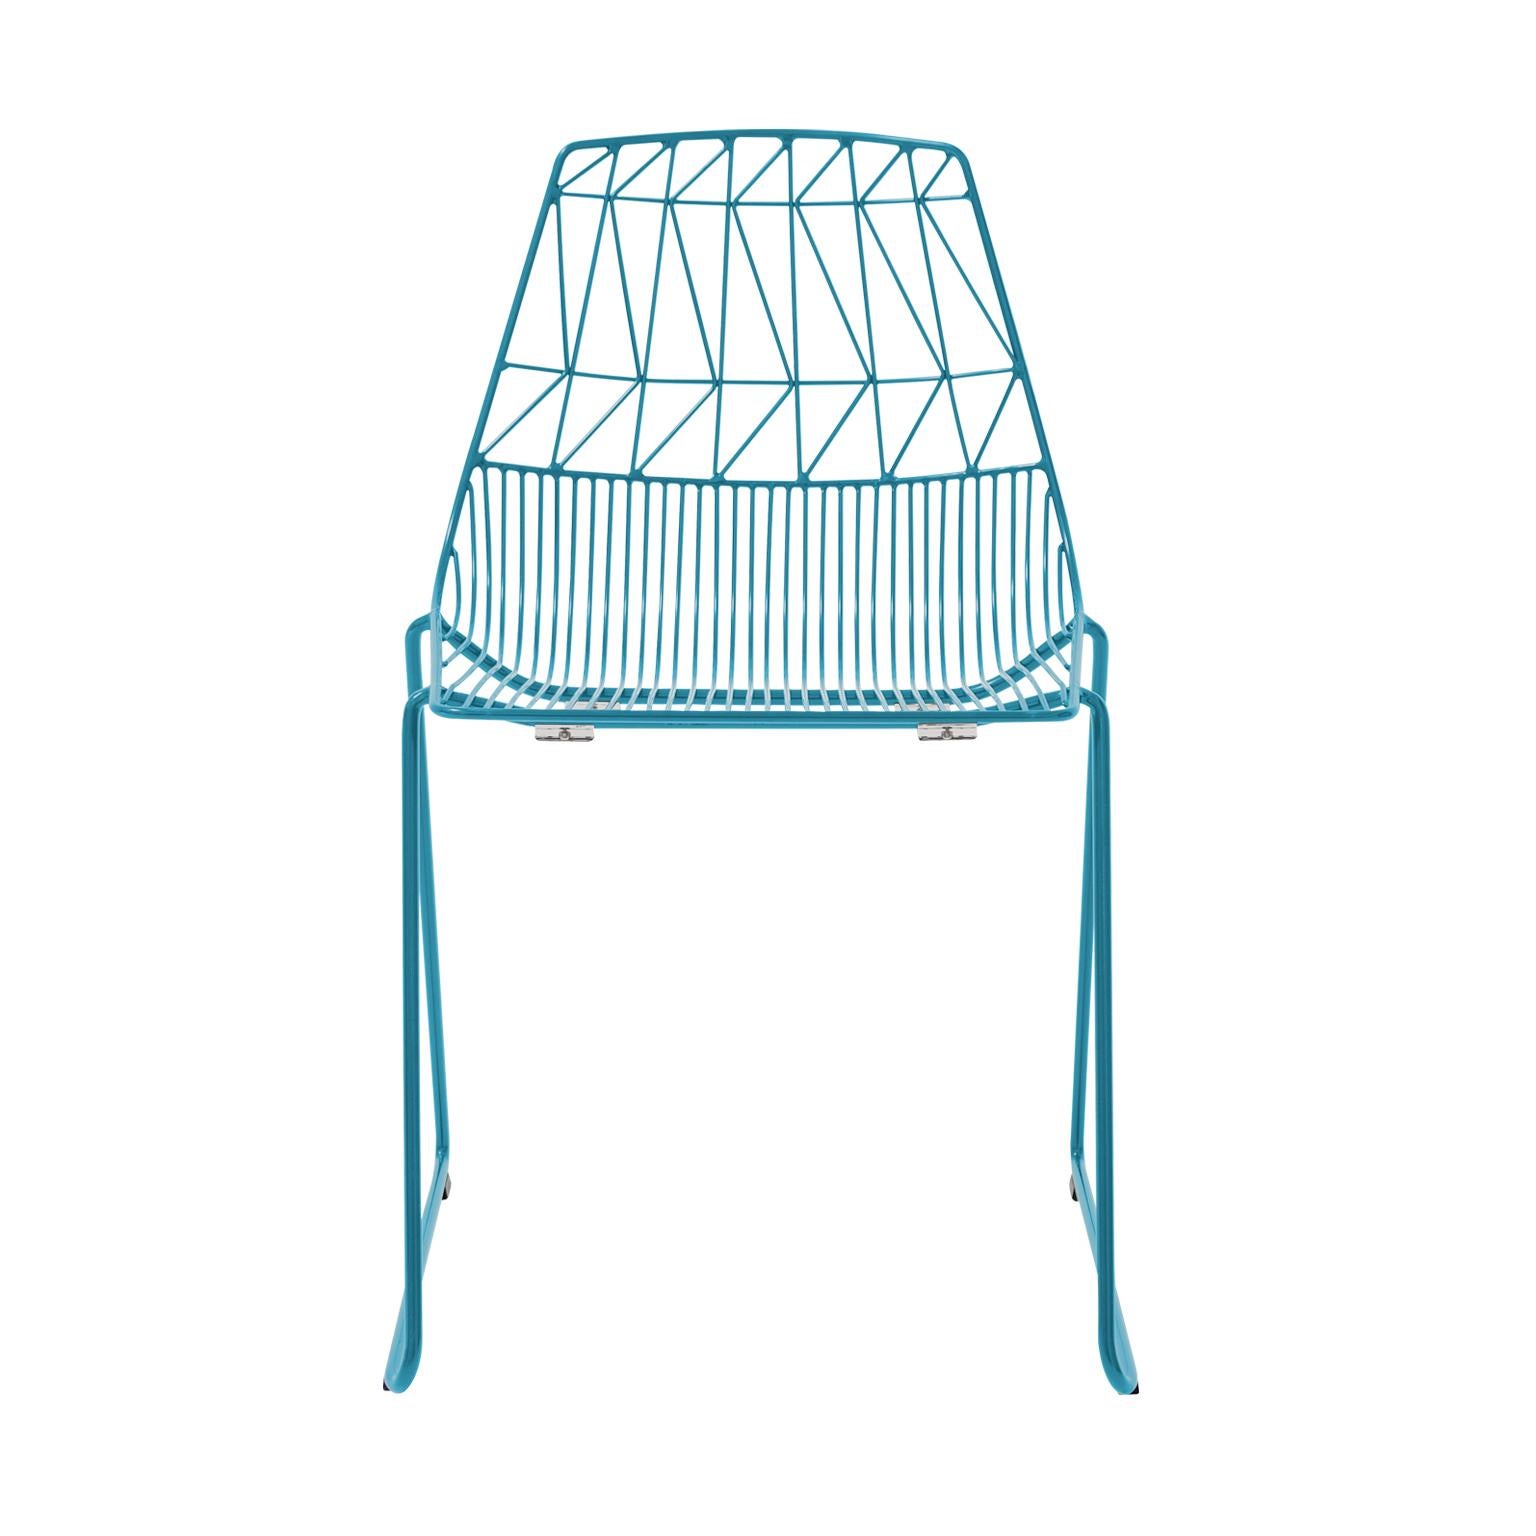 Meubles en fil métallique Bend Goods
Une chaise de salle à manger classique en fil métallique, la chaise empilable Lucy combine la polyvalence avec le design en fil métallique de la modernité du milieu du siècle. Idéal pour les sièges commerciaux